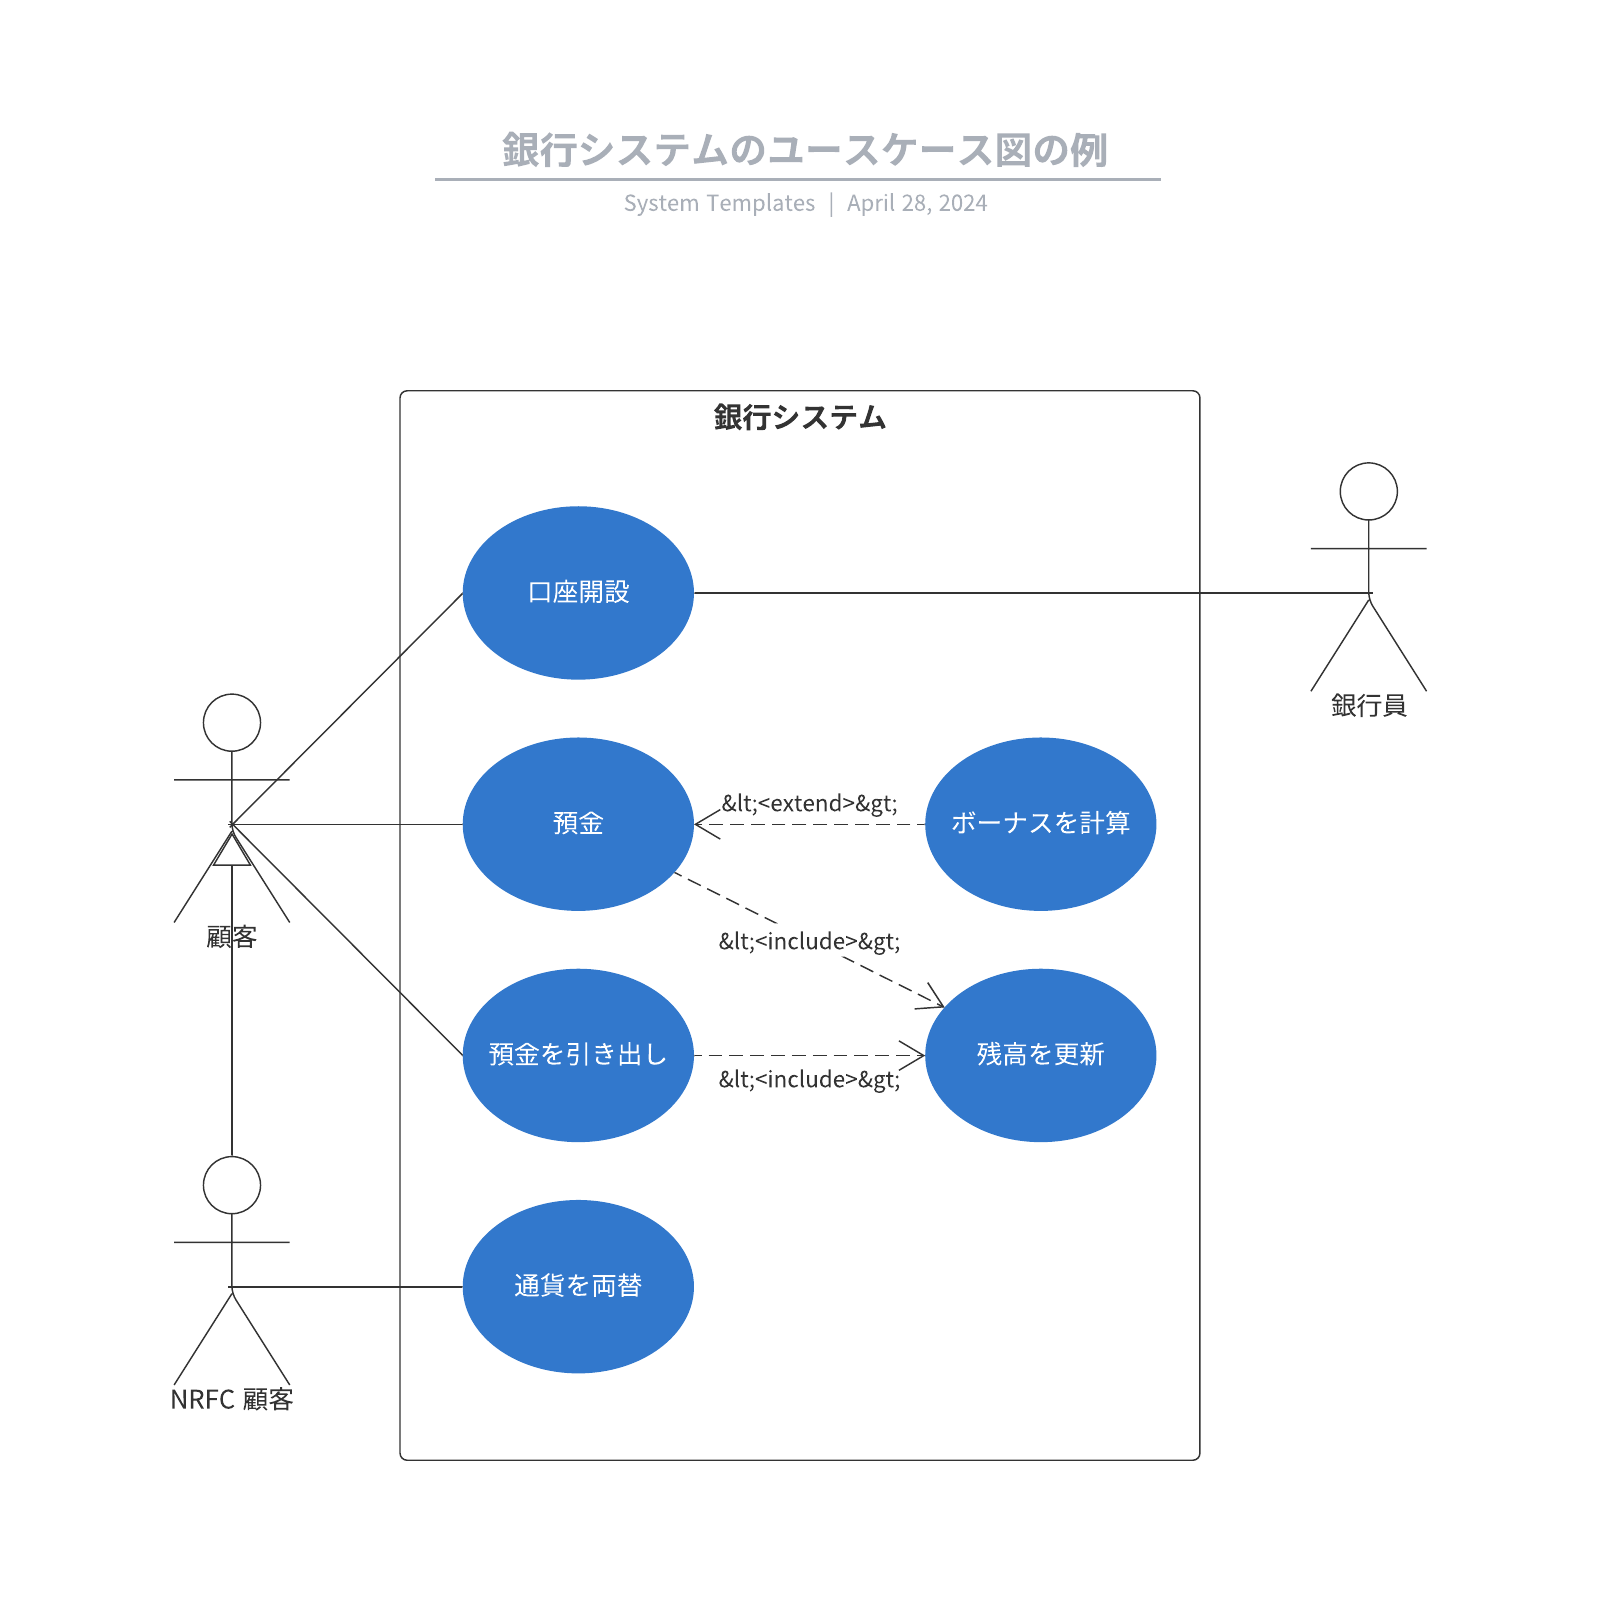 銀行システムのユースケース図の例